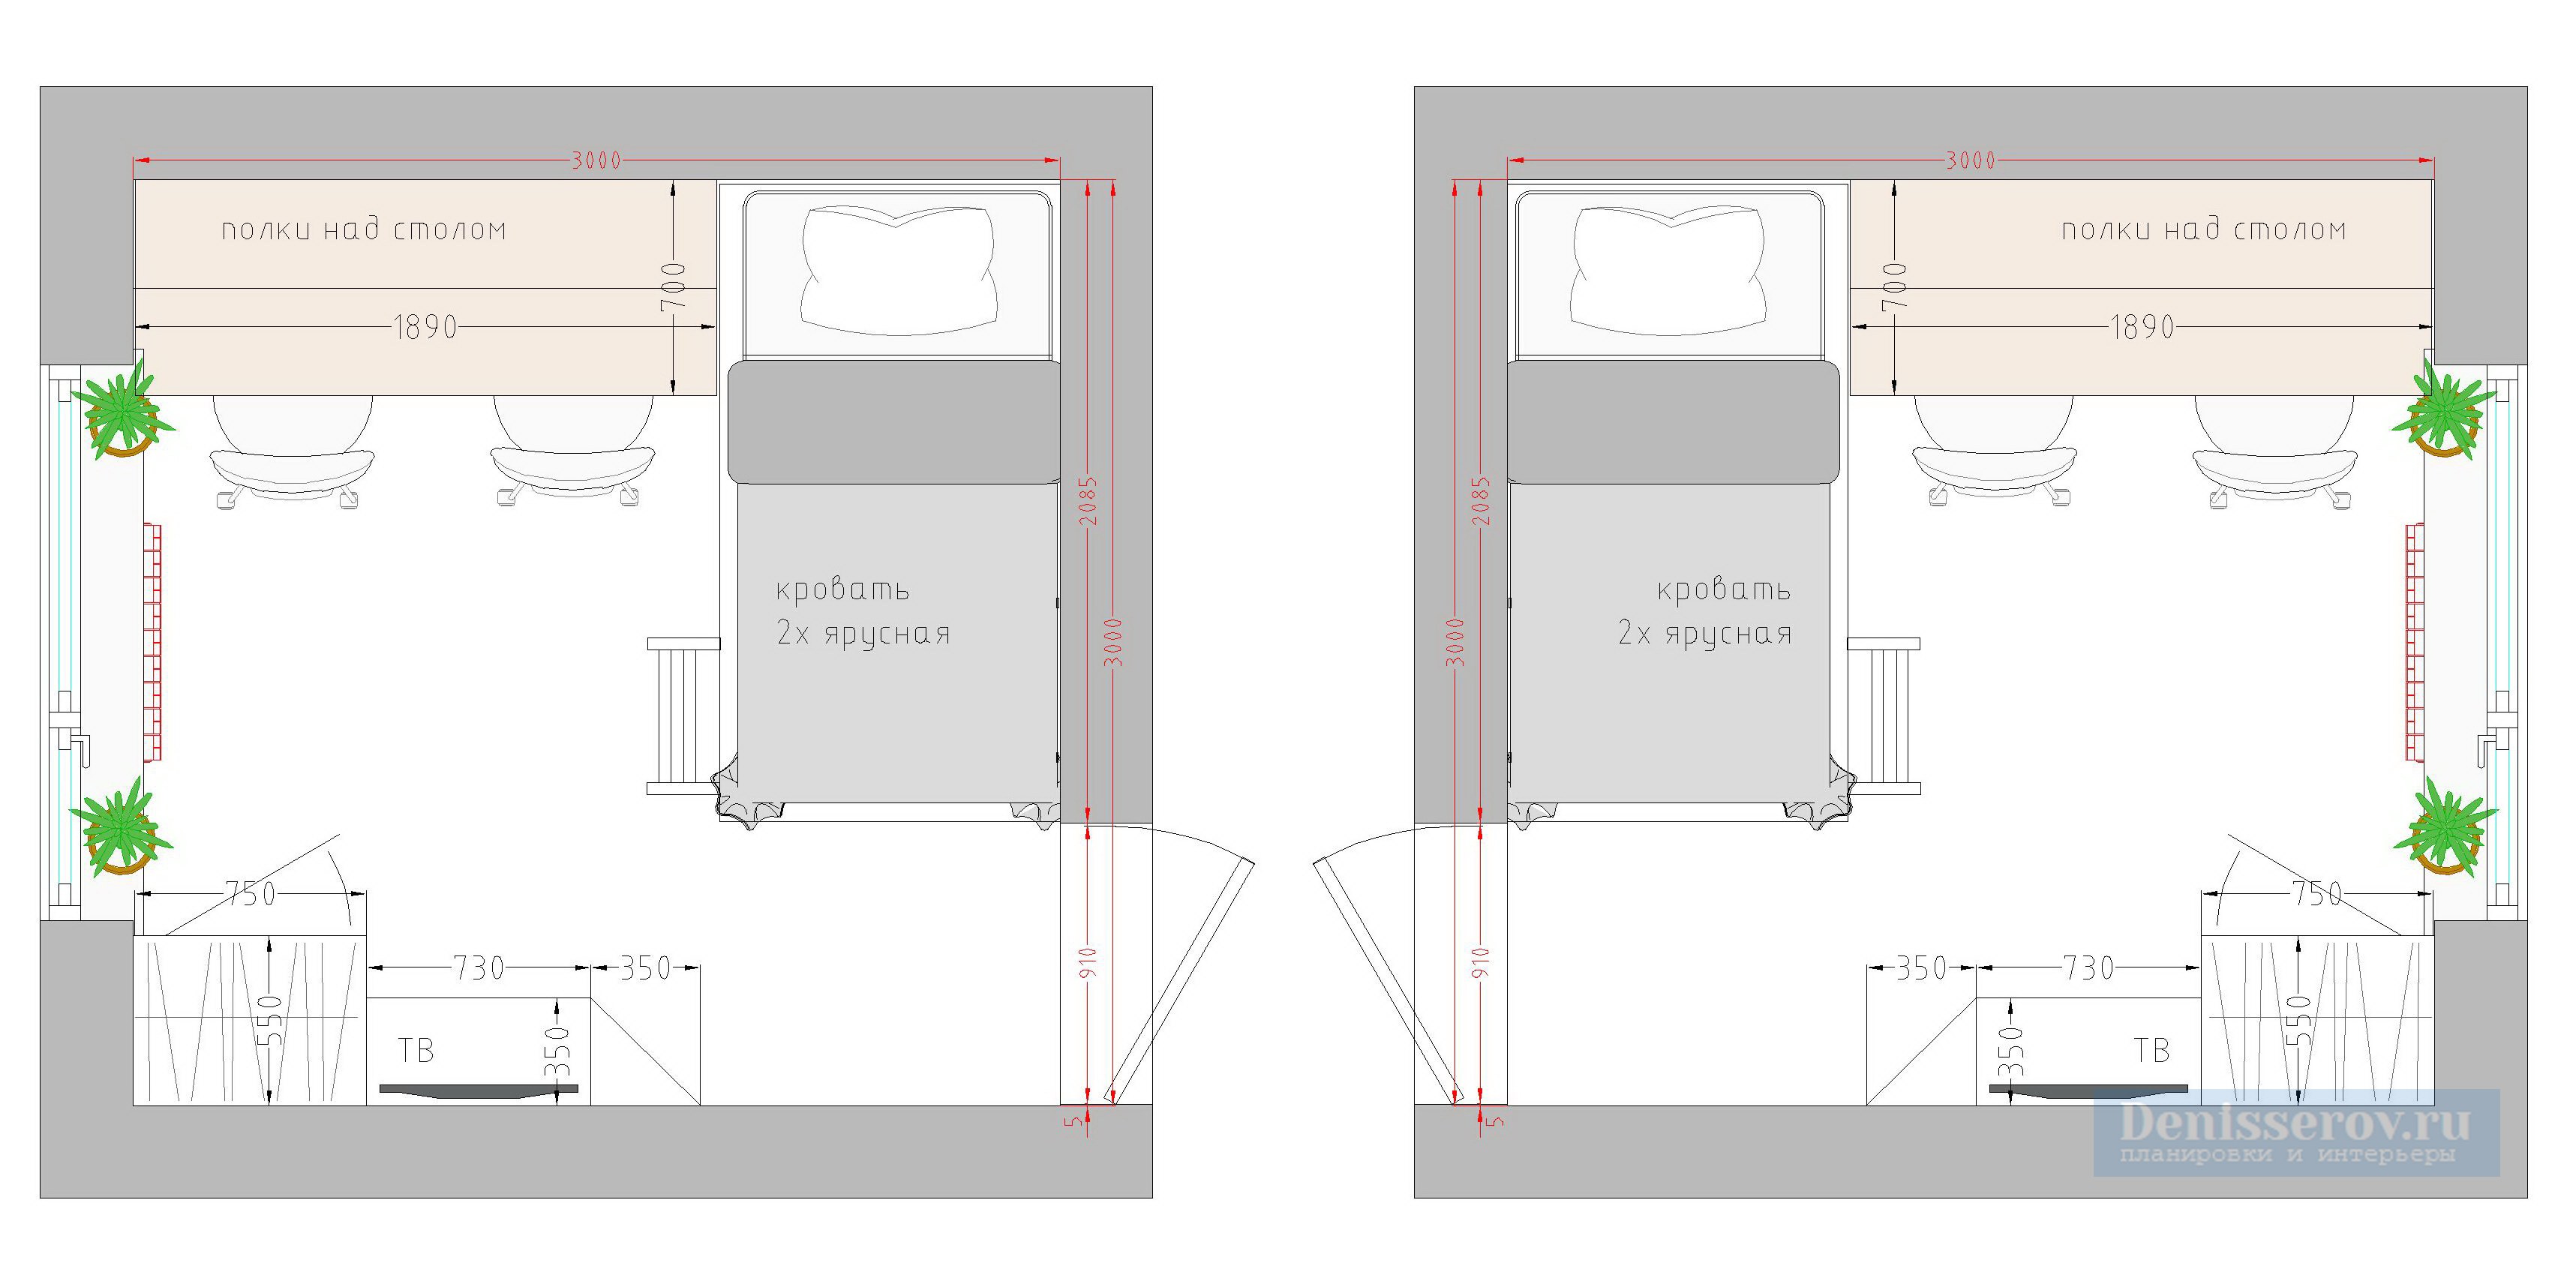 Спальня 12 кв м планировка с размерами